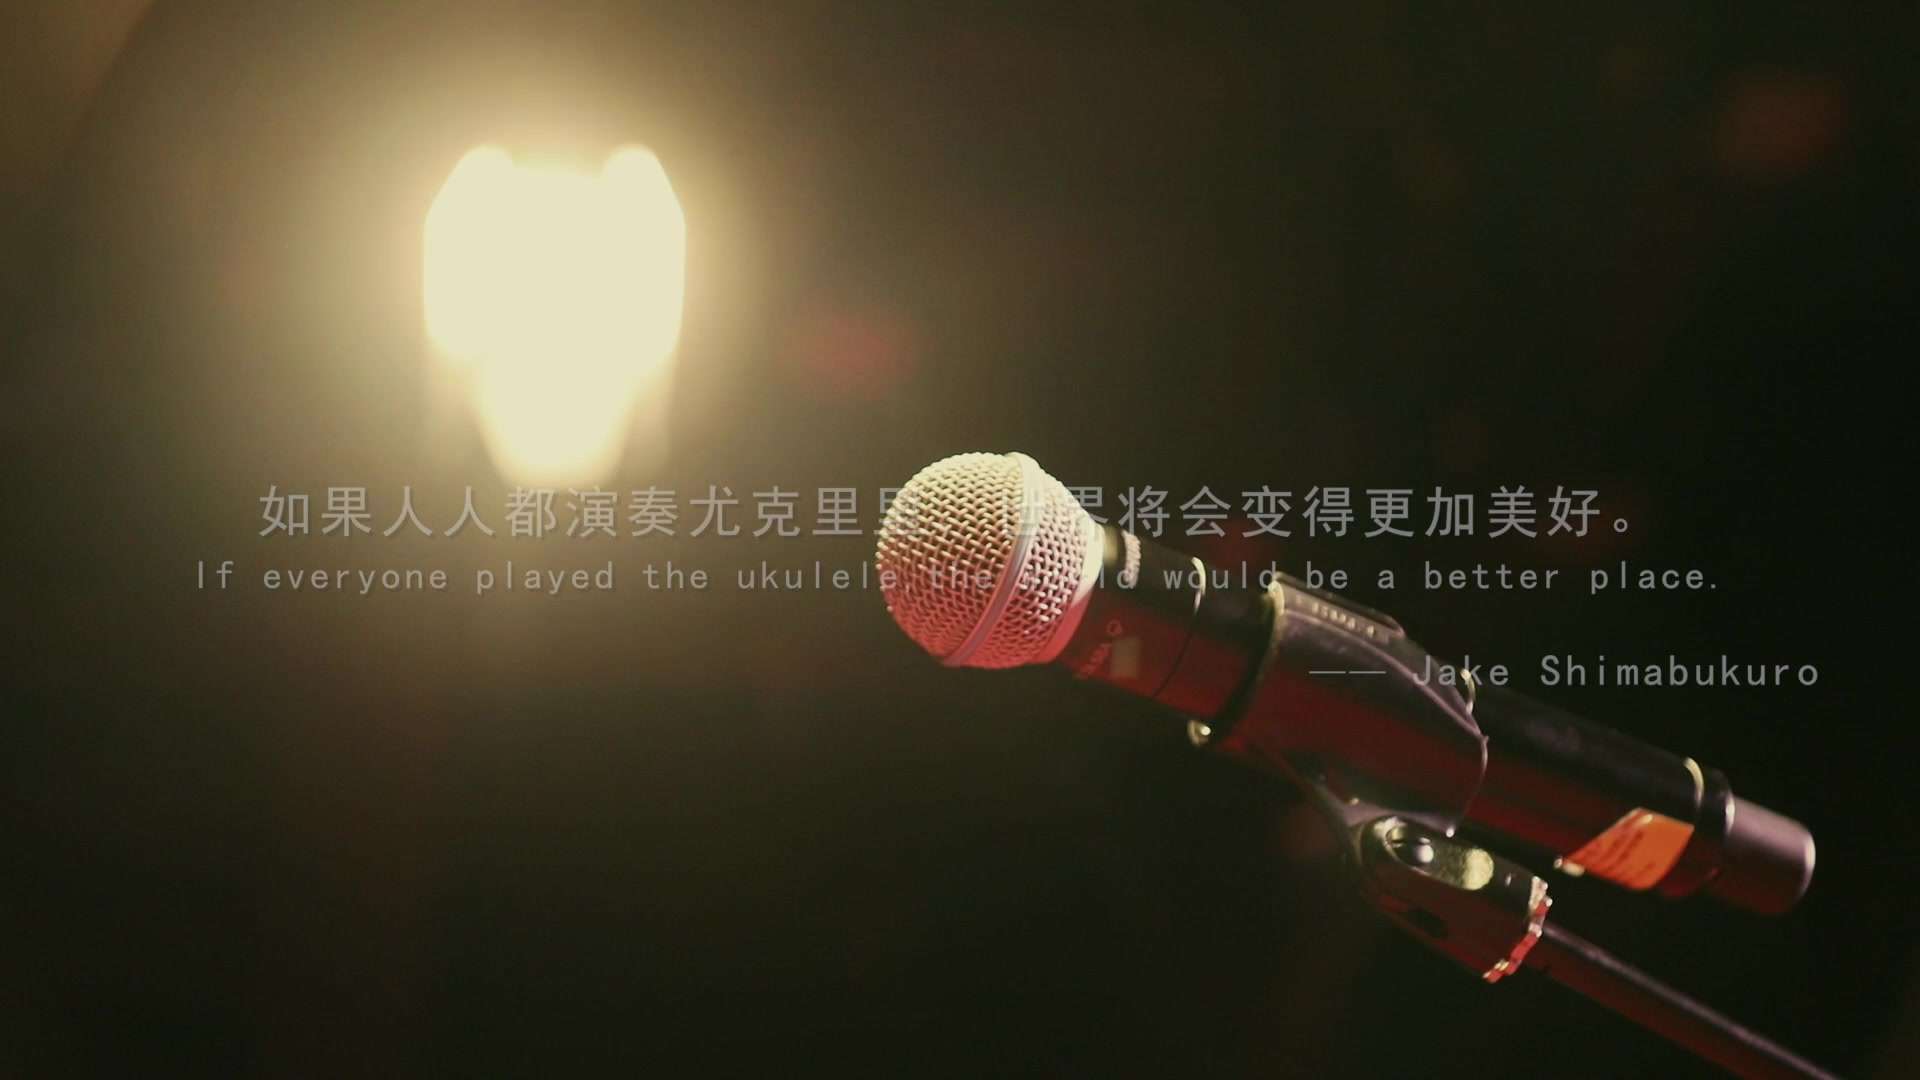 之前在上海拍摄的《刘宗立音乐会》